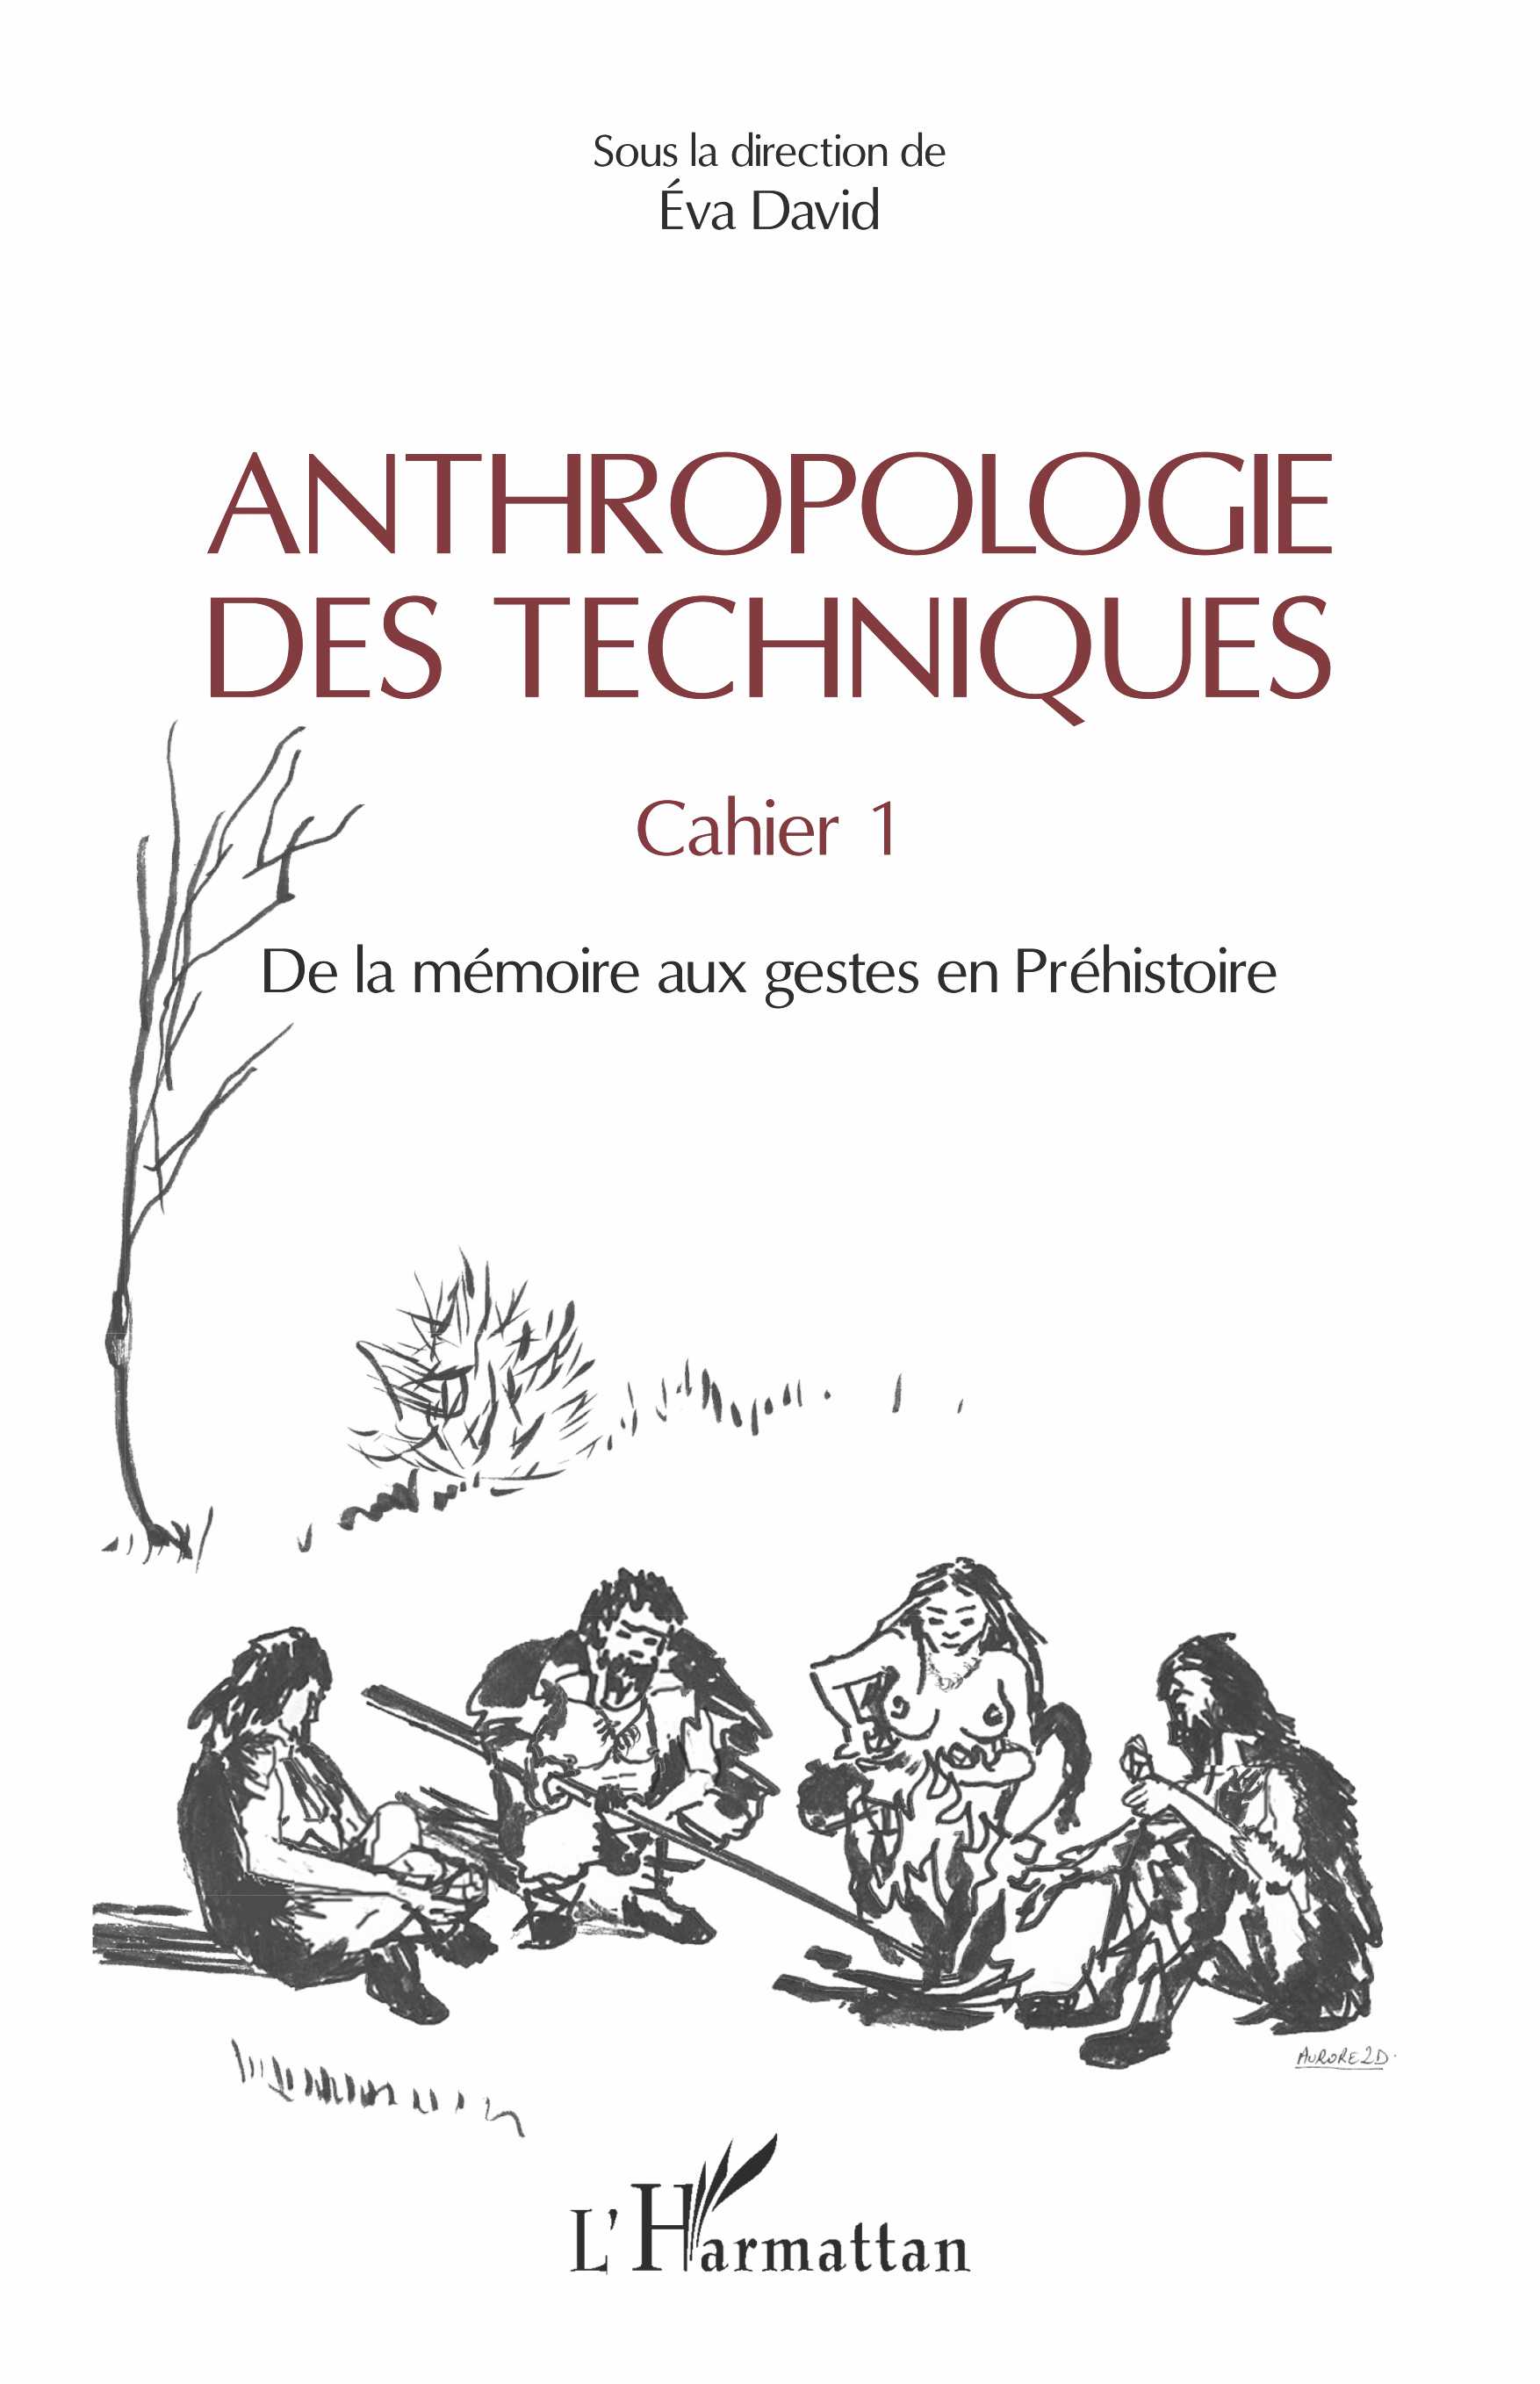 Anthropologie des techniques. Cahier 1. De la mémoire aux gestes en prehistoire, 2019, 220 p.